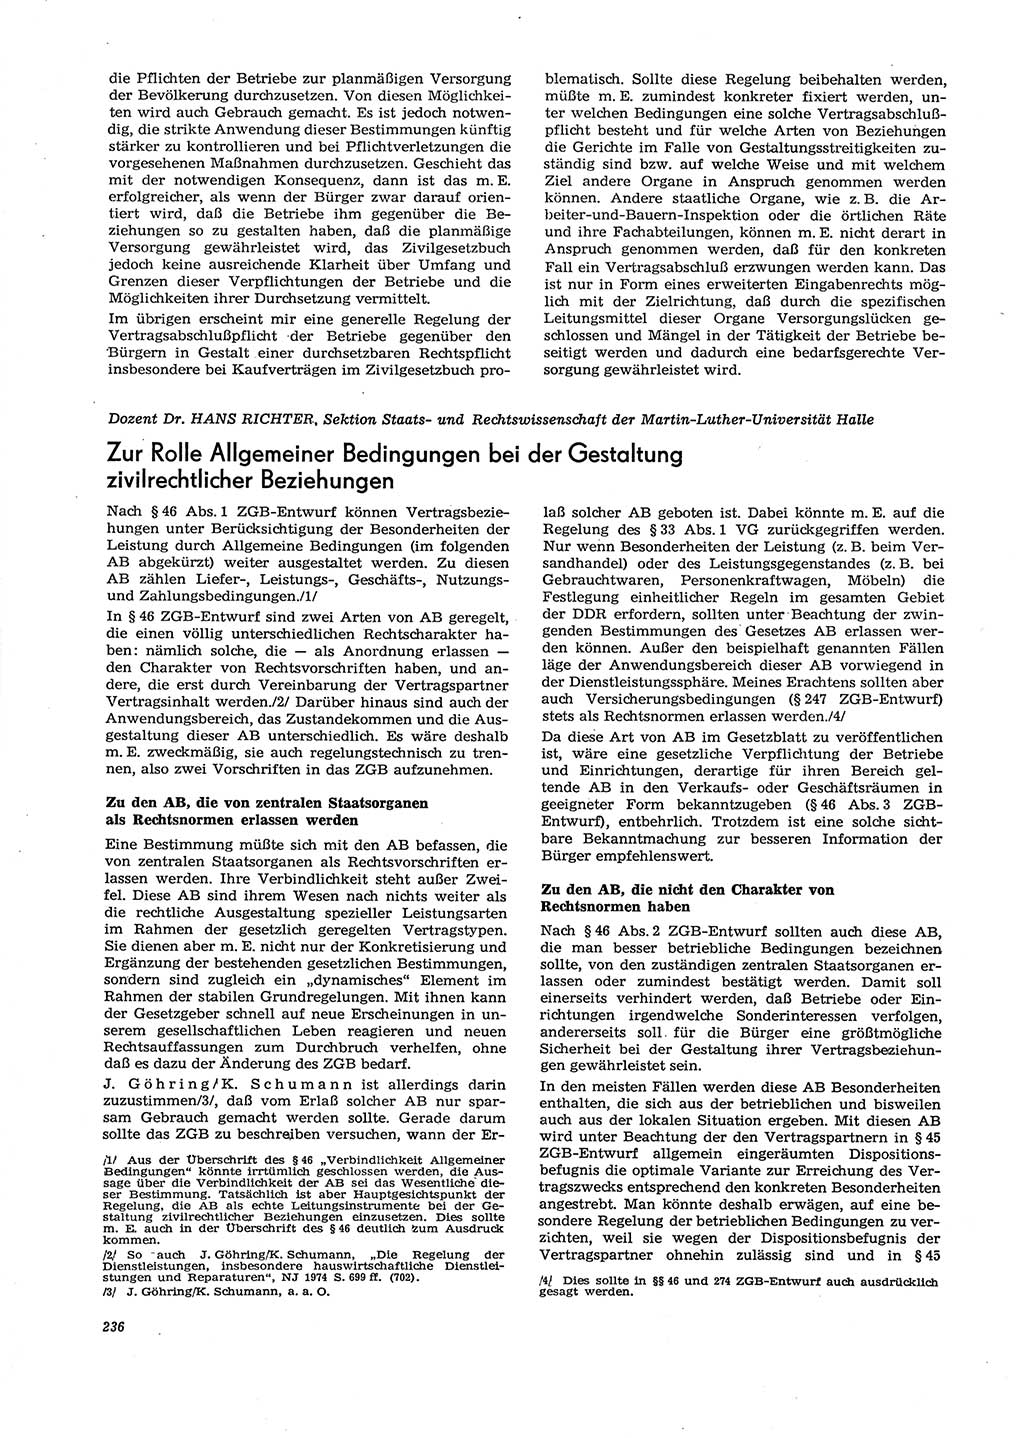 Neue Justiz (NJ), Zeitschrift für Recht und Rechtswissenschaft [Deutsche Demokratische Republik (DDR)], 29. Jahrgang 1975, Seite 236 (NJ DDR 1975, S. 236)